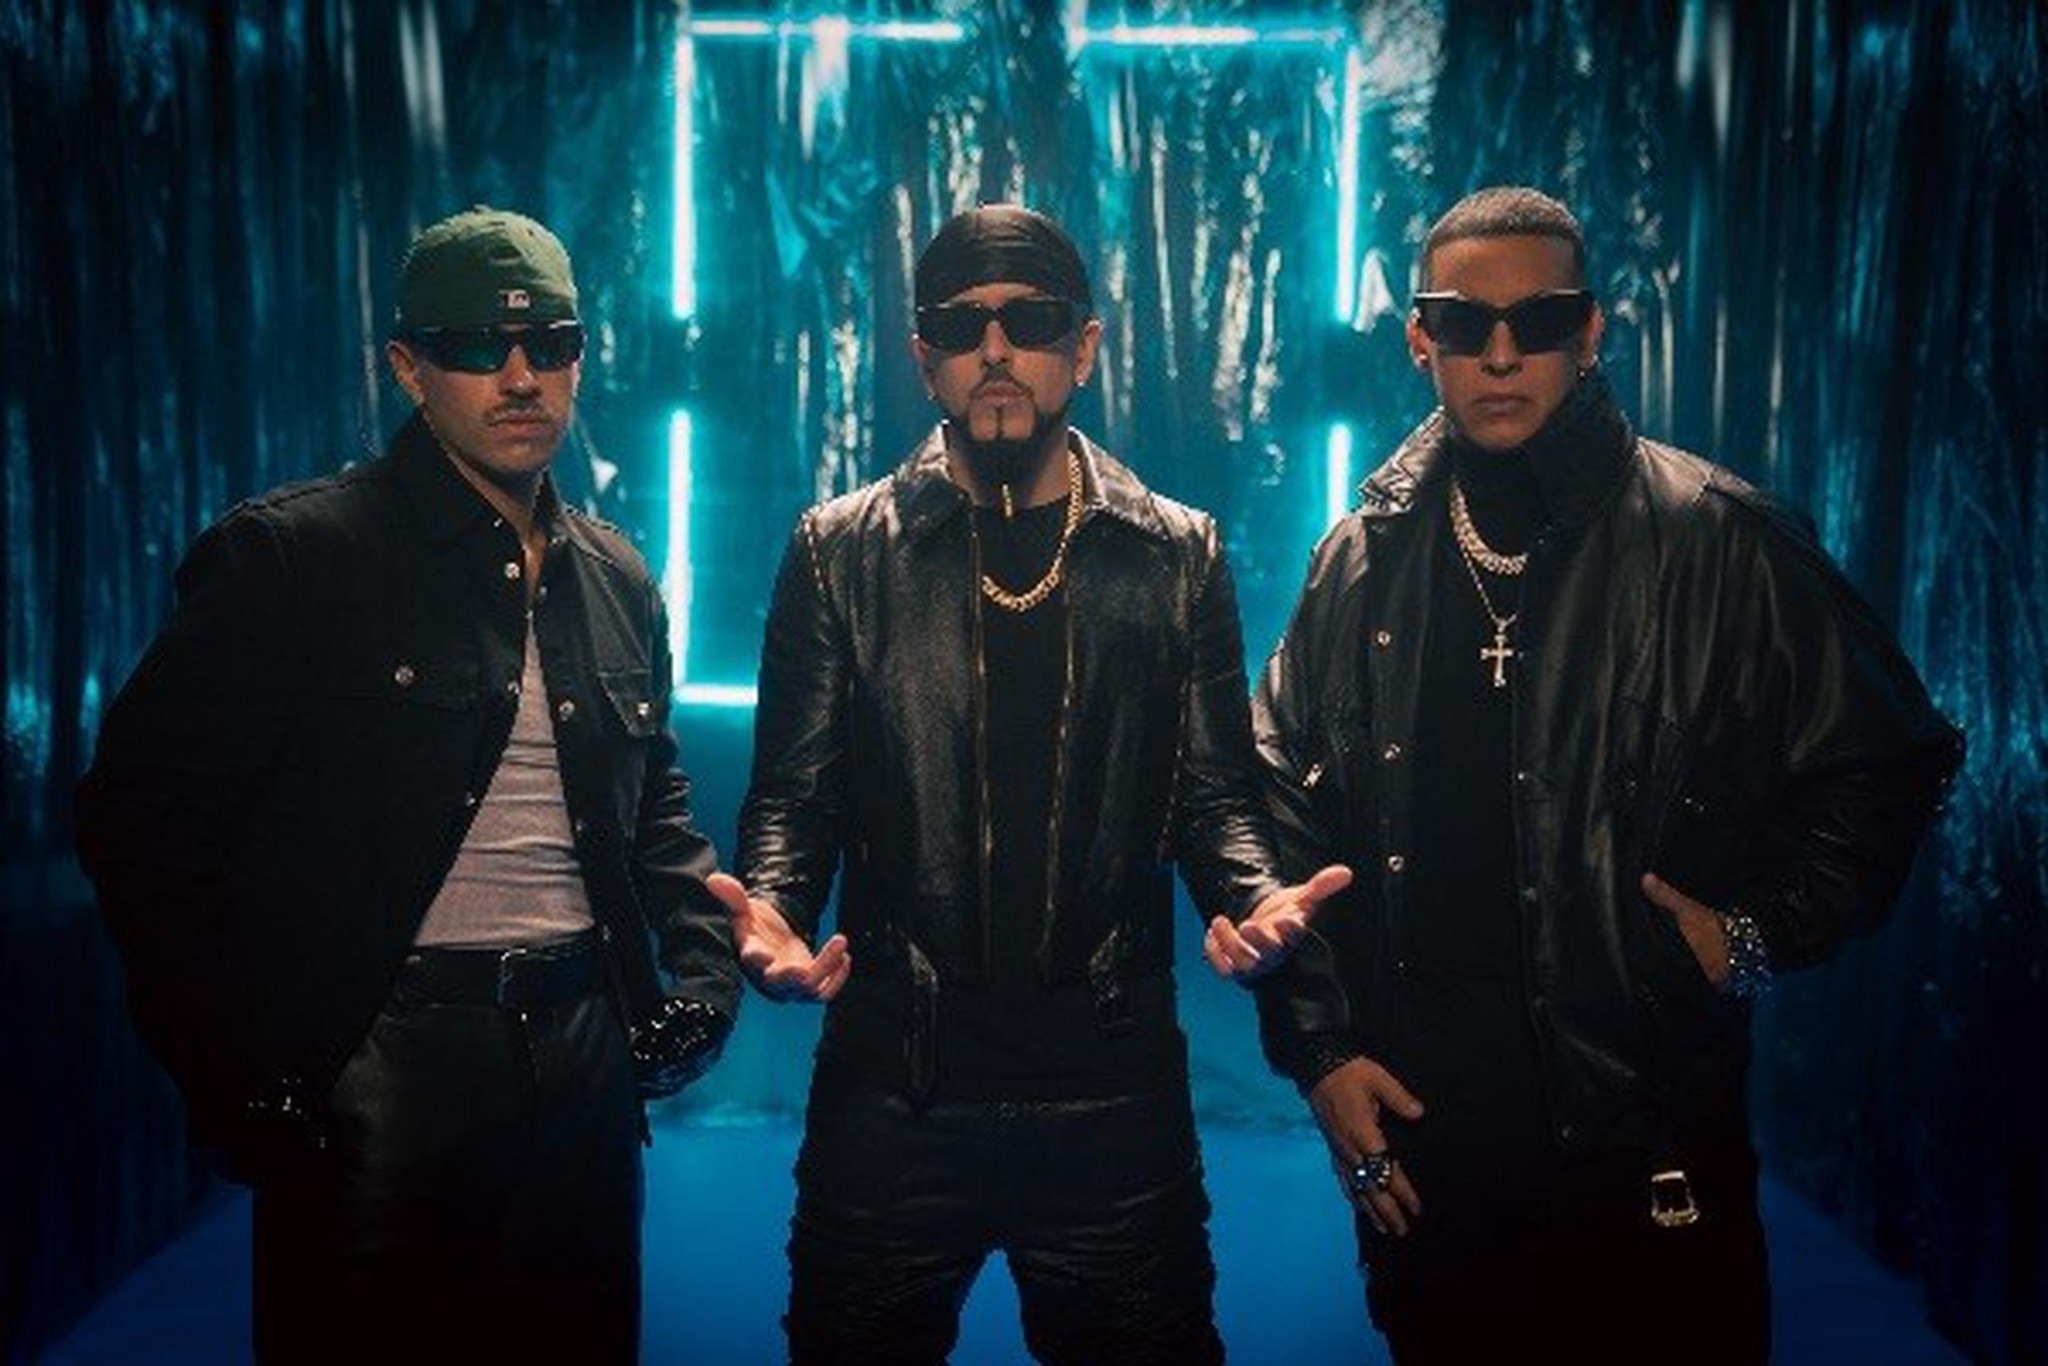 ¿Ya lo viste? Daddy Yankee estrena videoclip con Yandel y Feid (+Video)